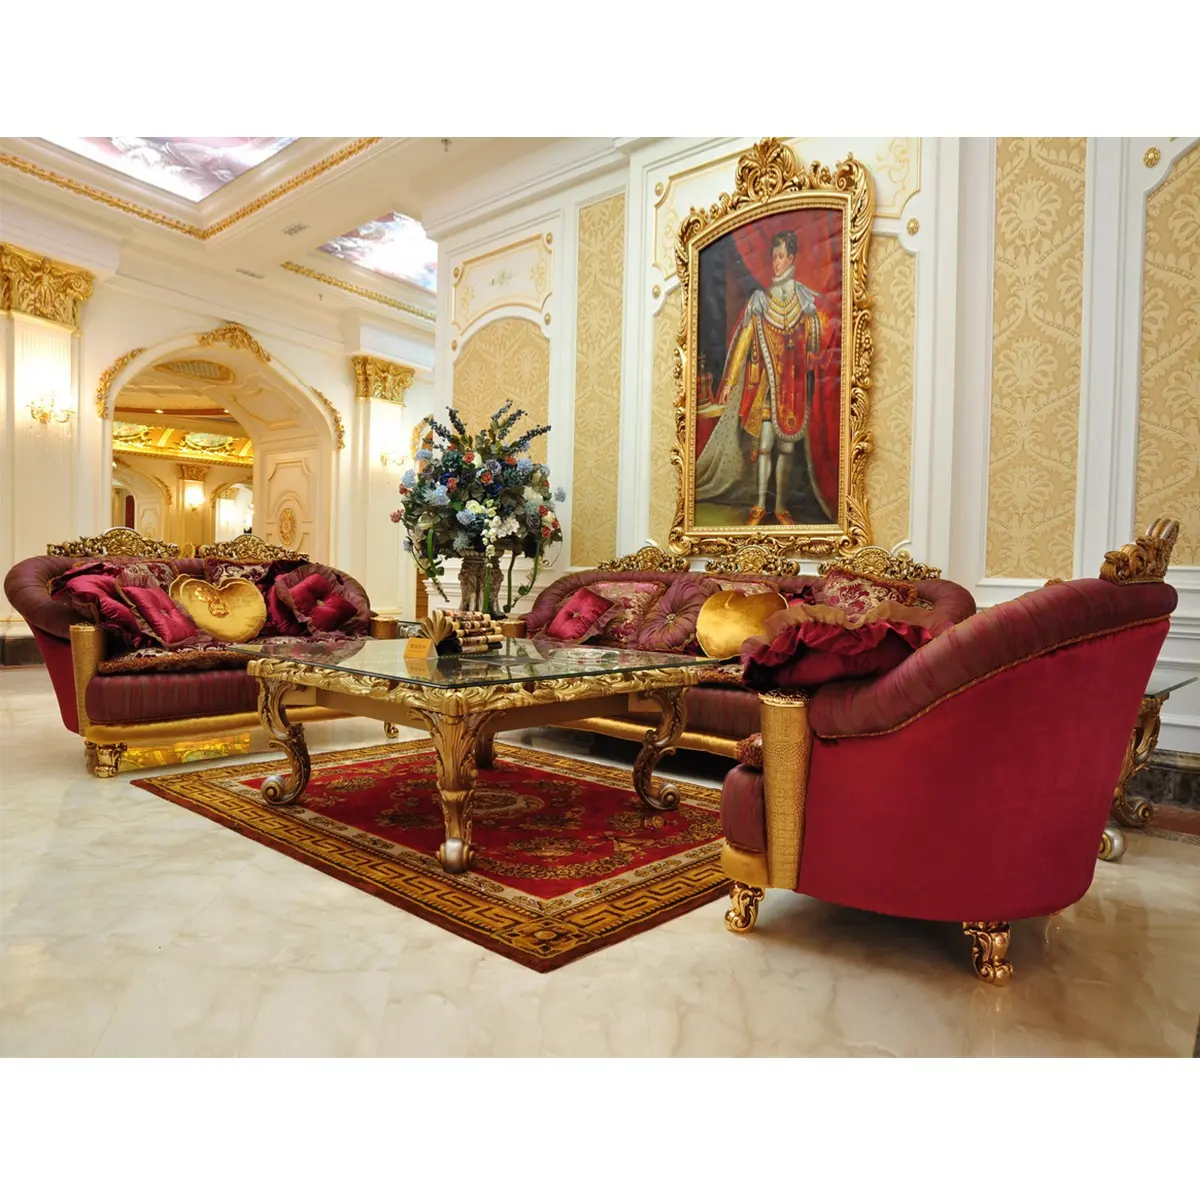 וילה סגנון אירופאי קלאסי מעץ מלא בצבע זהב יוקרה רויאל סט ספות בד יד מגולפת